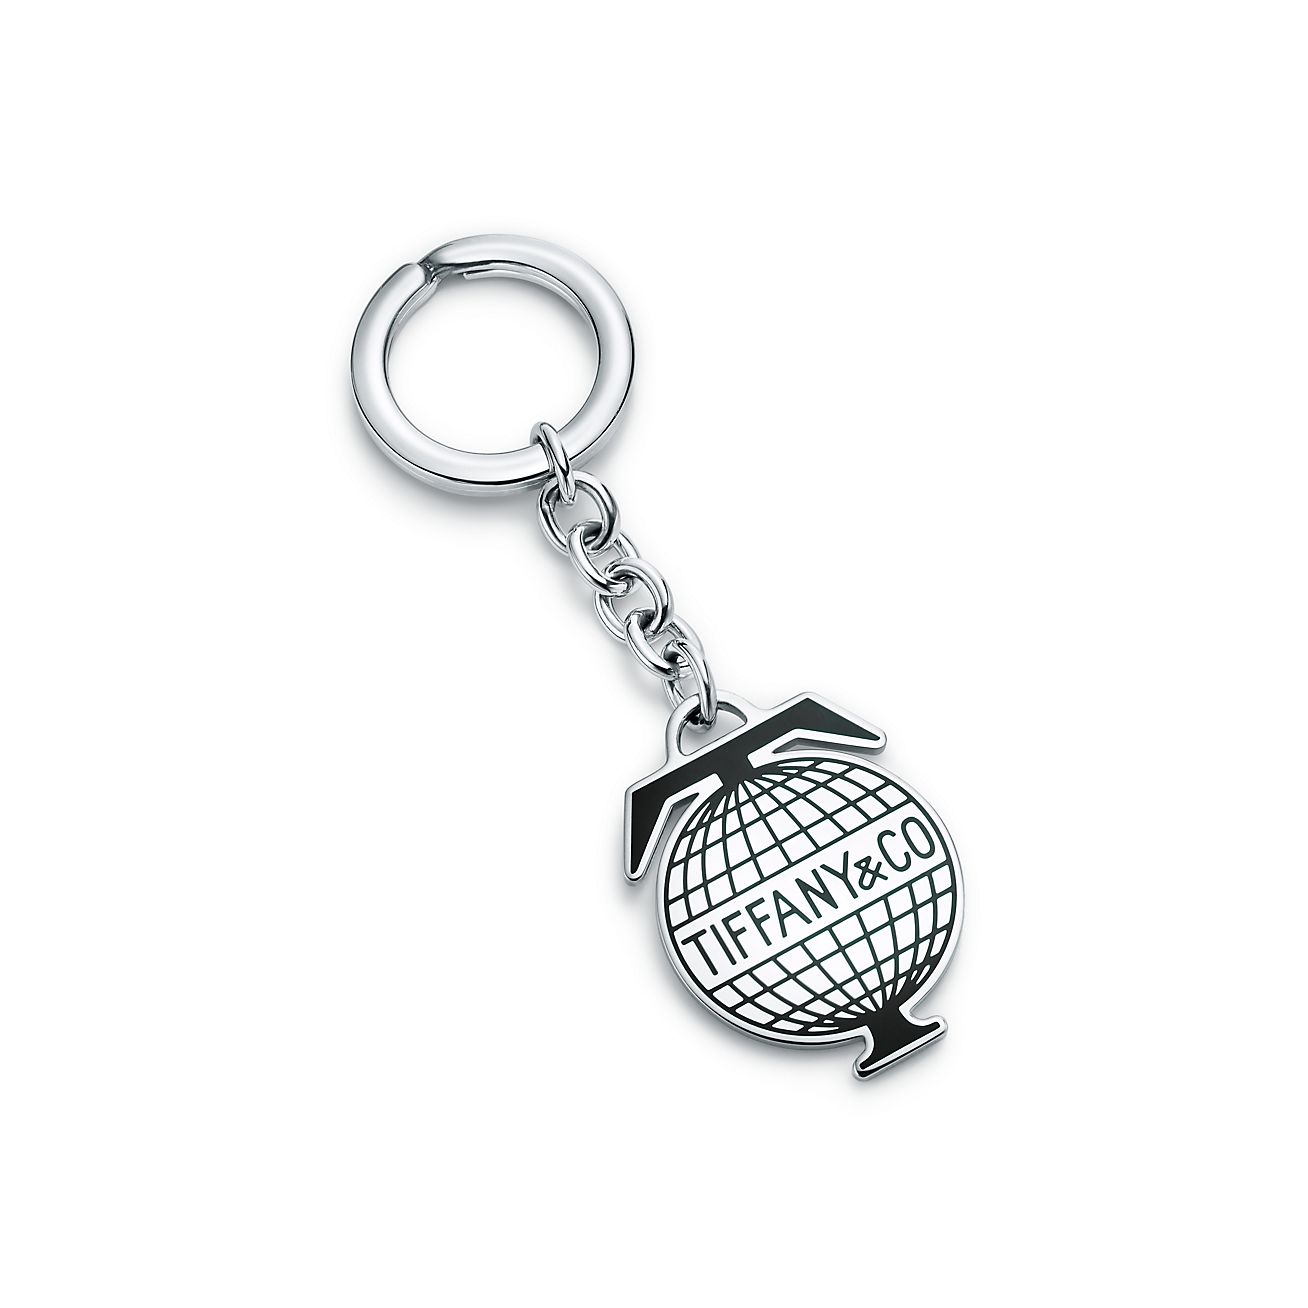 Tiffany Travel globe key ring in 